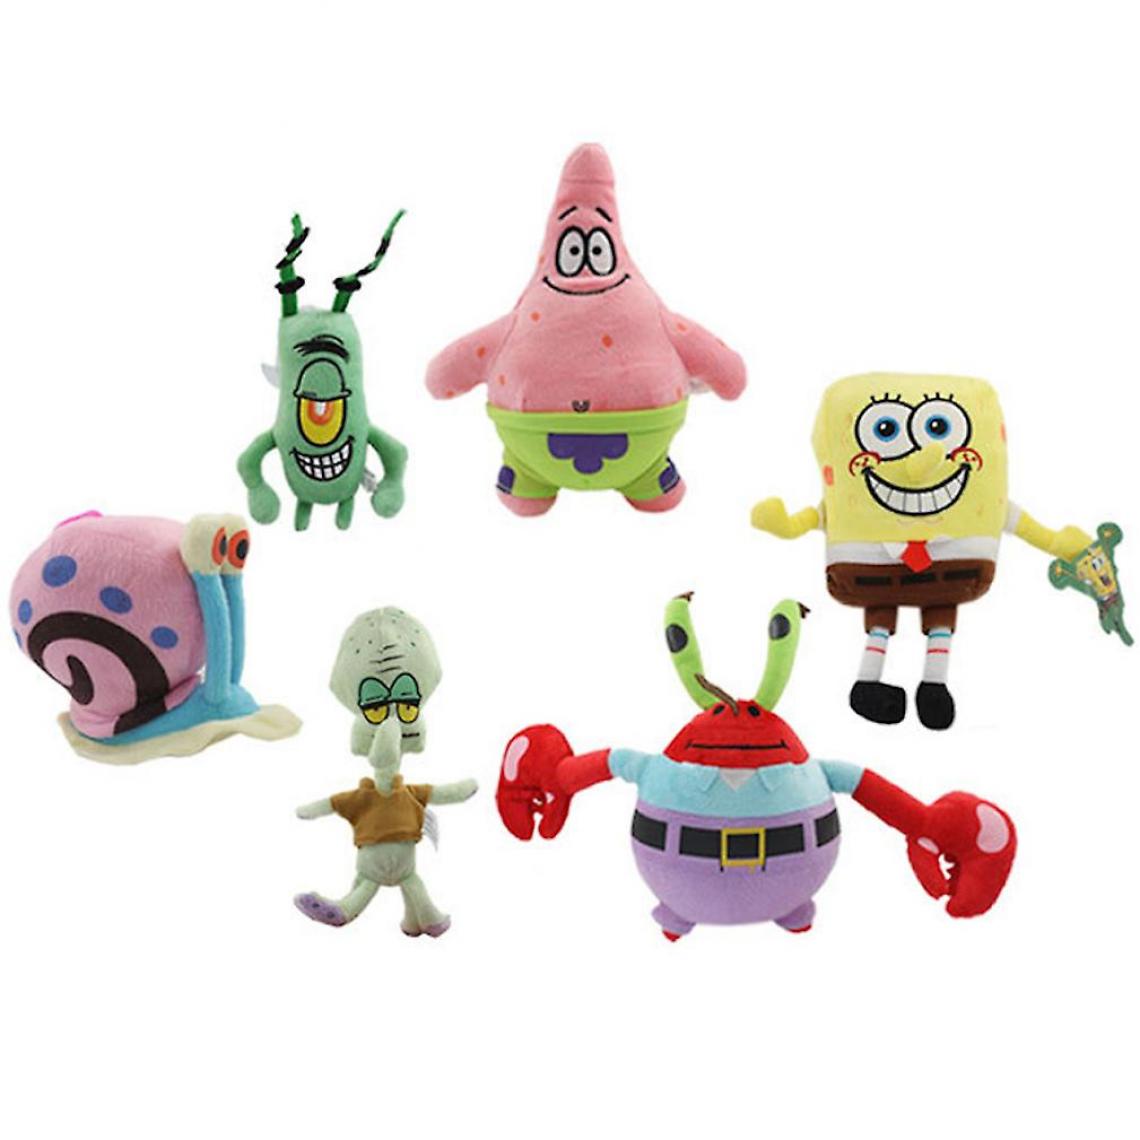 Universal - 6pc/lot Spongebob Soft Stuffed Plush Toy Dolls(Coloré) - Animaux